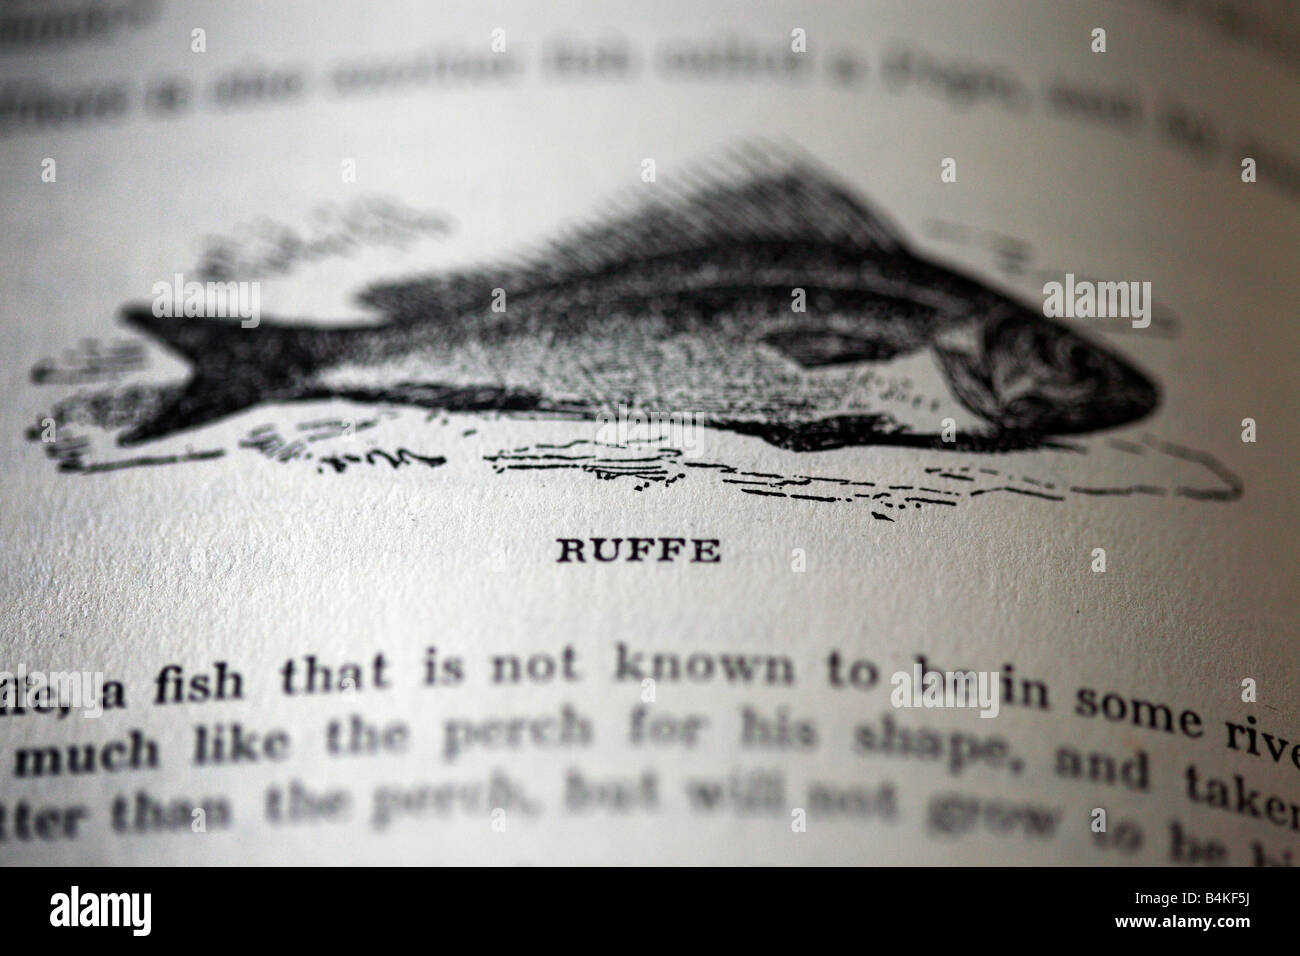 Monochromen Abbildungen aus einem Buch von Fischen durch Izaack Walton, "The Compeat Angler". Stockfoto